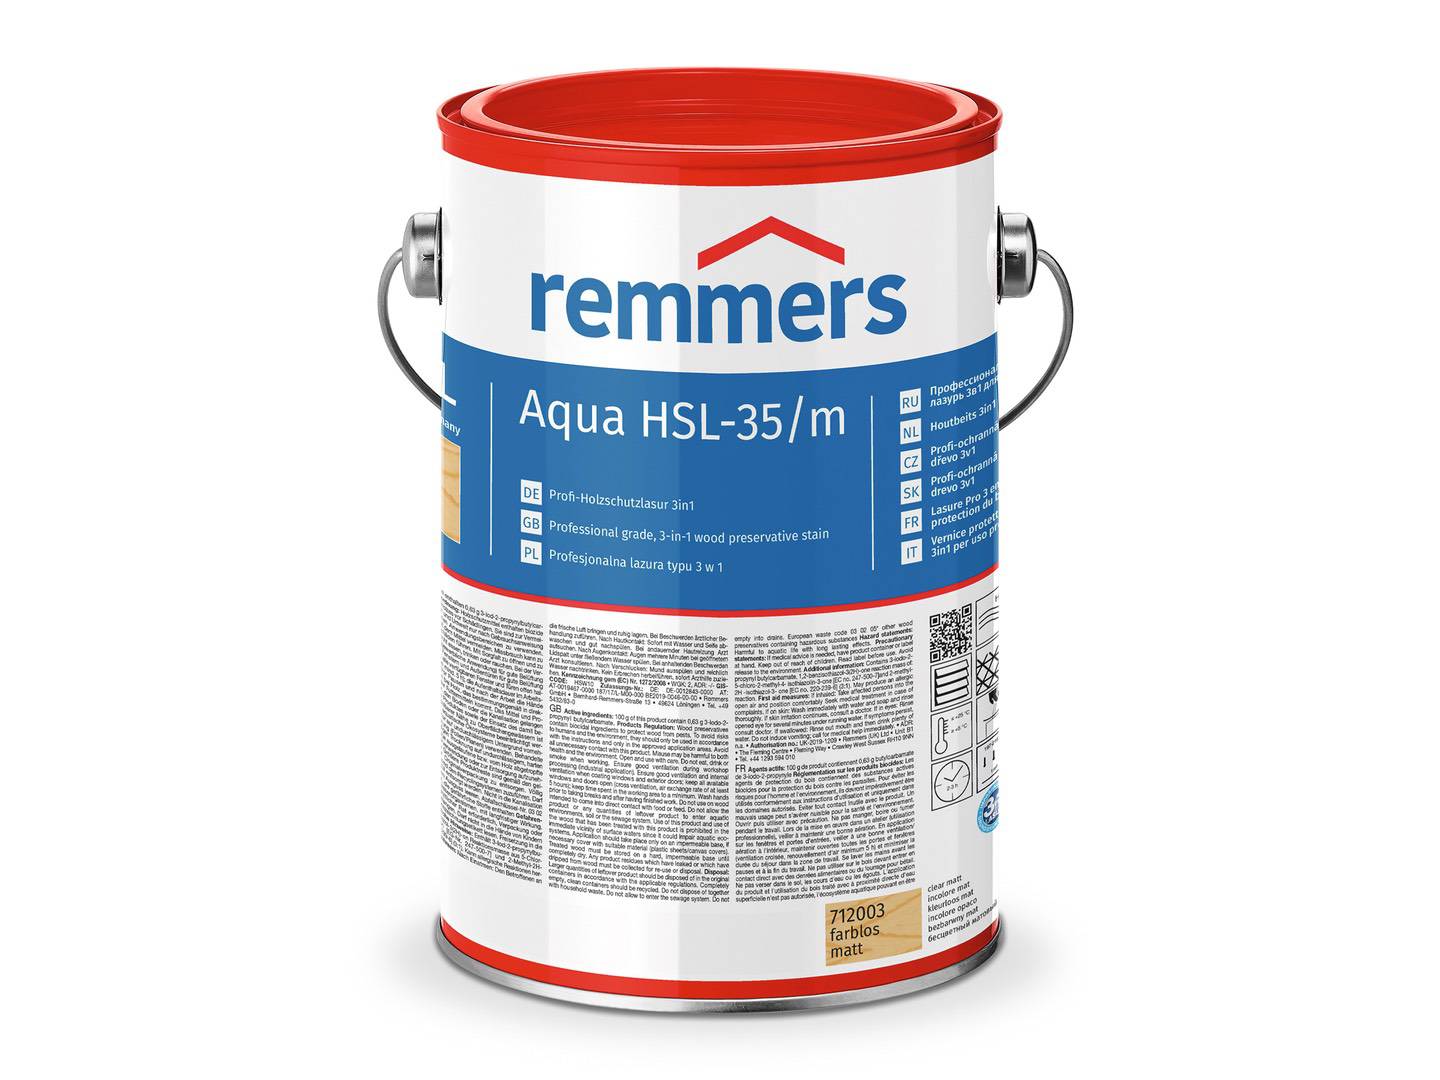 REMMERS Aqua HSL-35/m-Profi-Holzschutz-Lasur 3in1 palisander (RC-720) 2,50 l